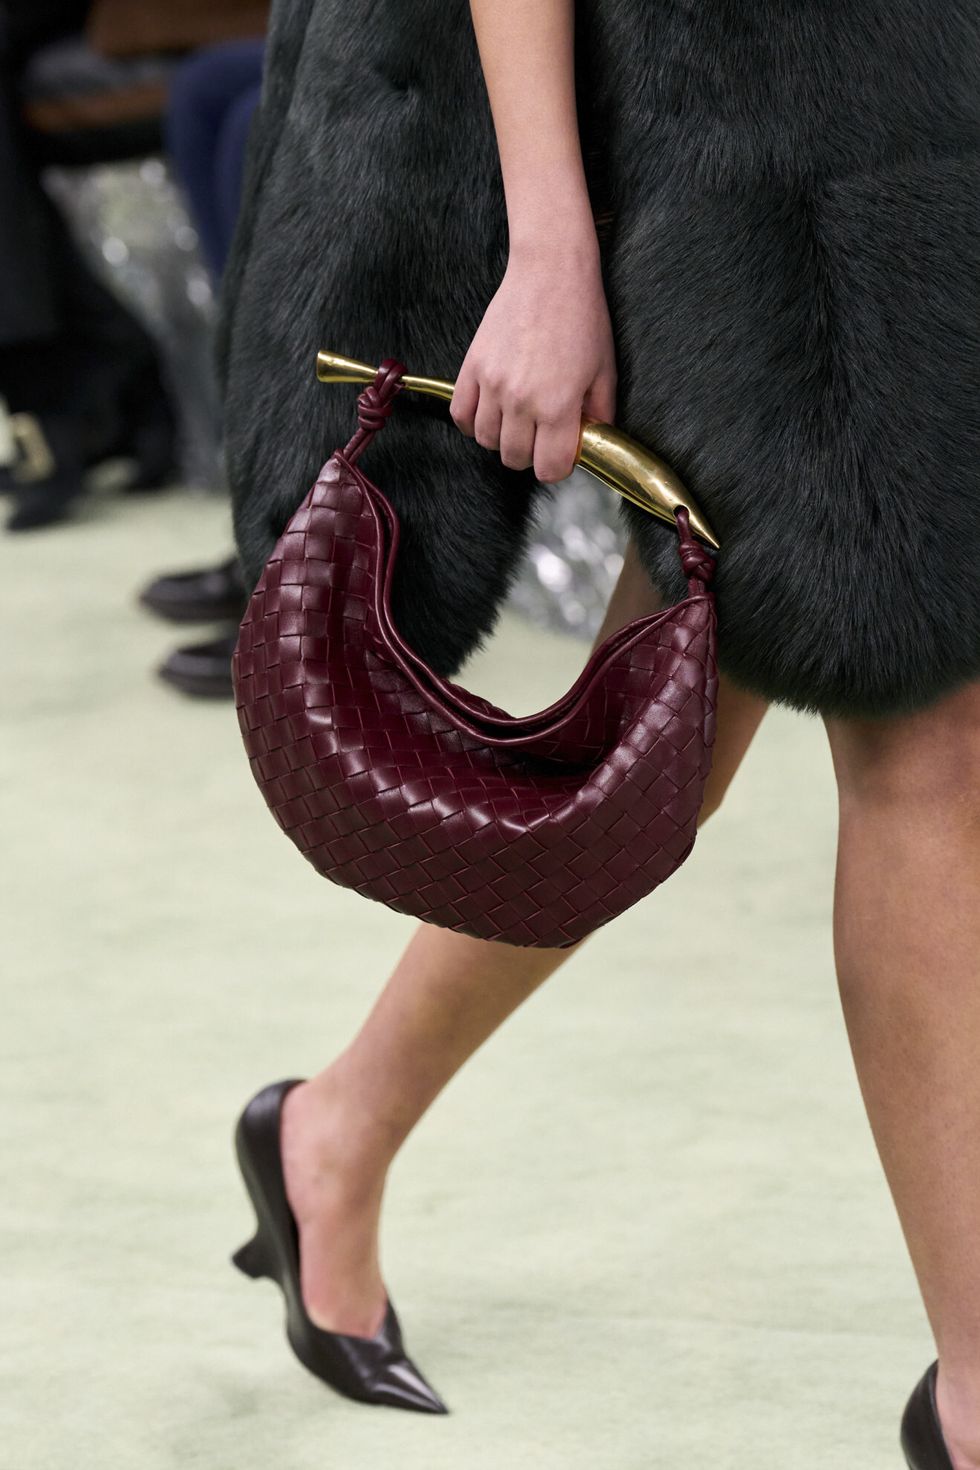 9 Trending Shoe & Handbag Styles For Fall 2022 — Blushful Belle